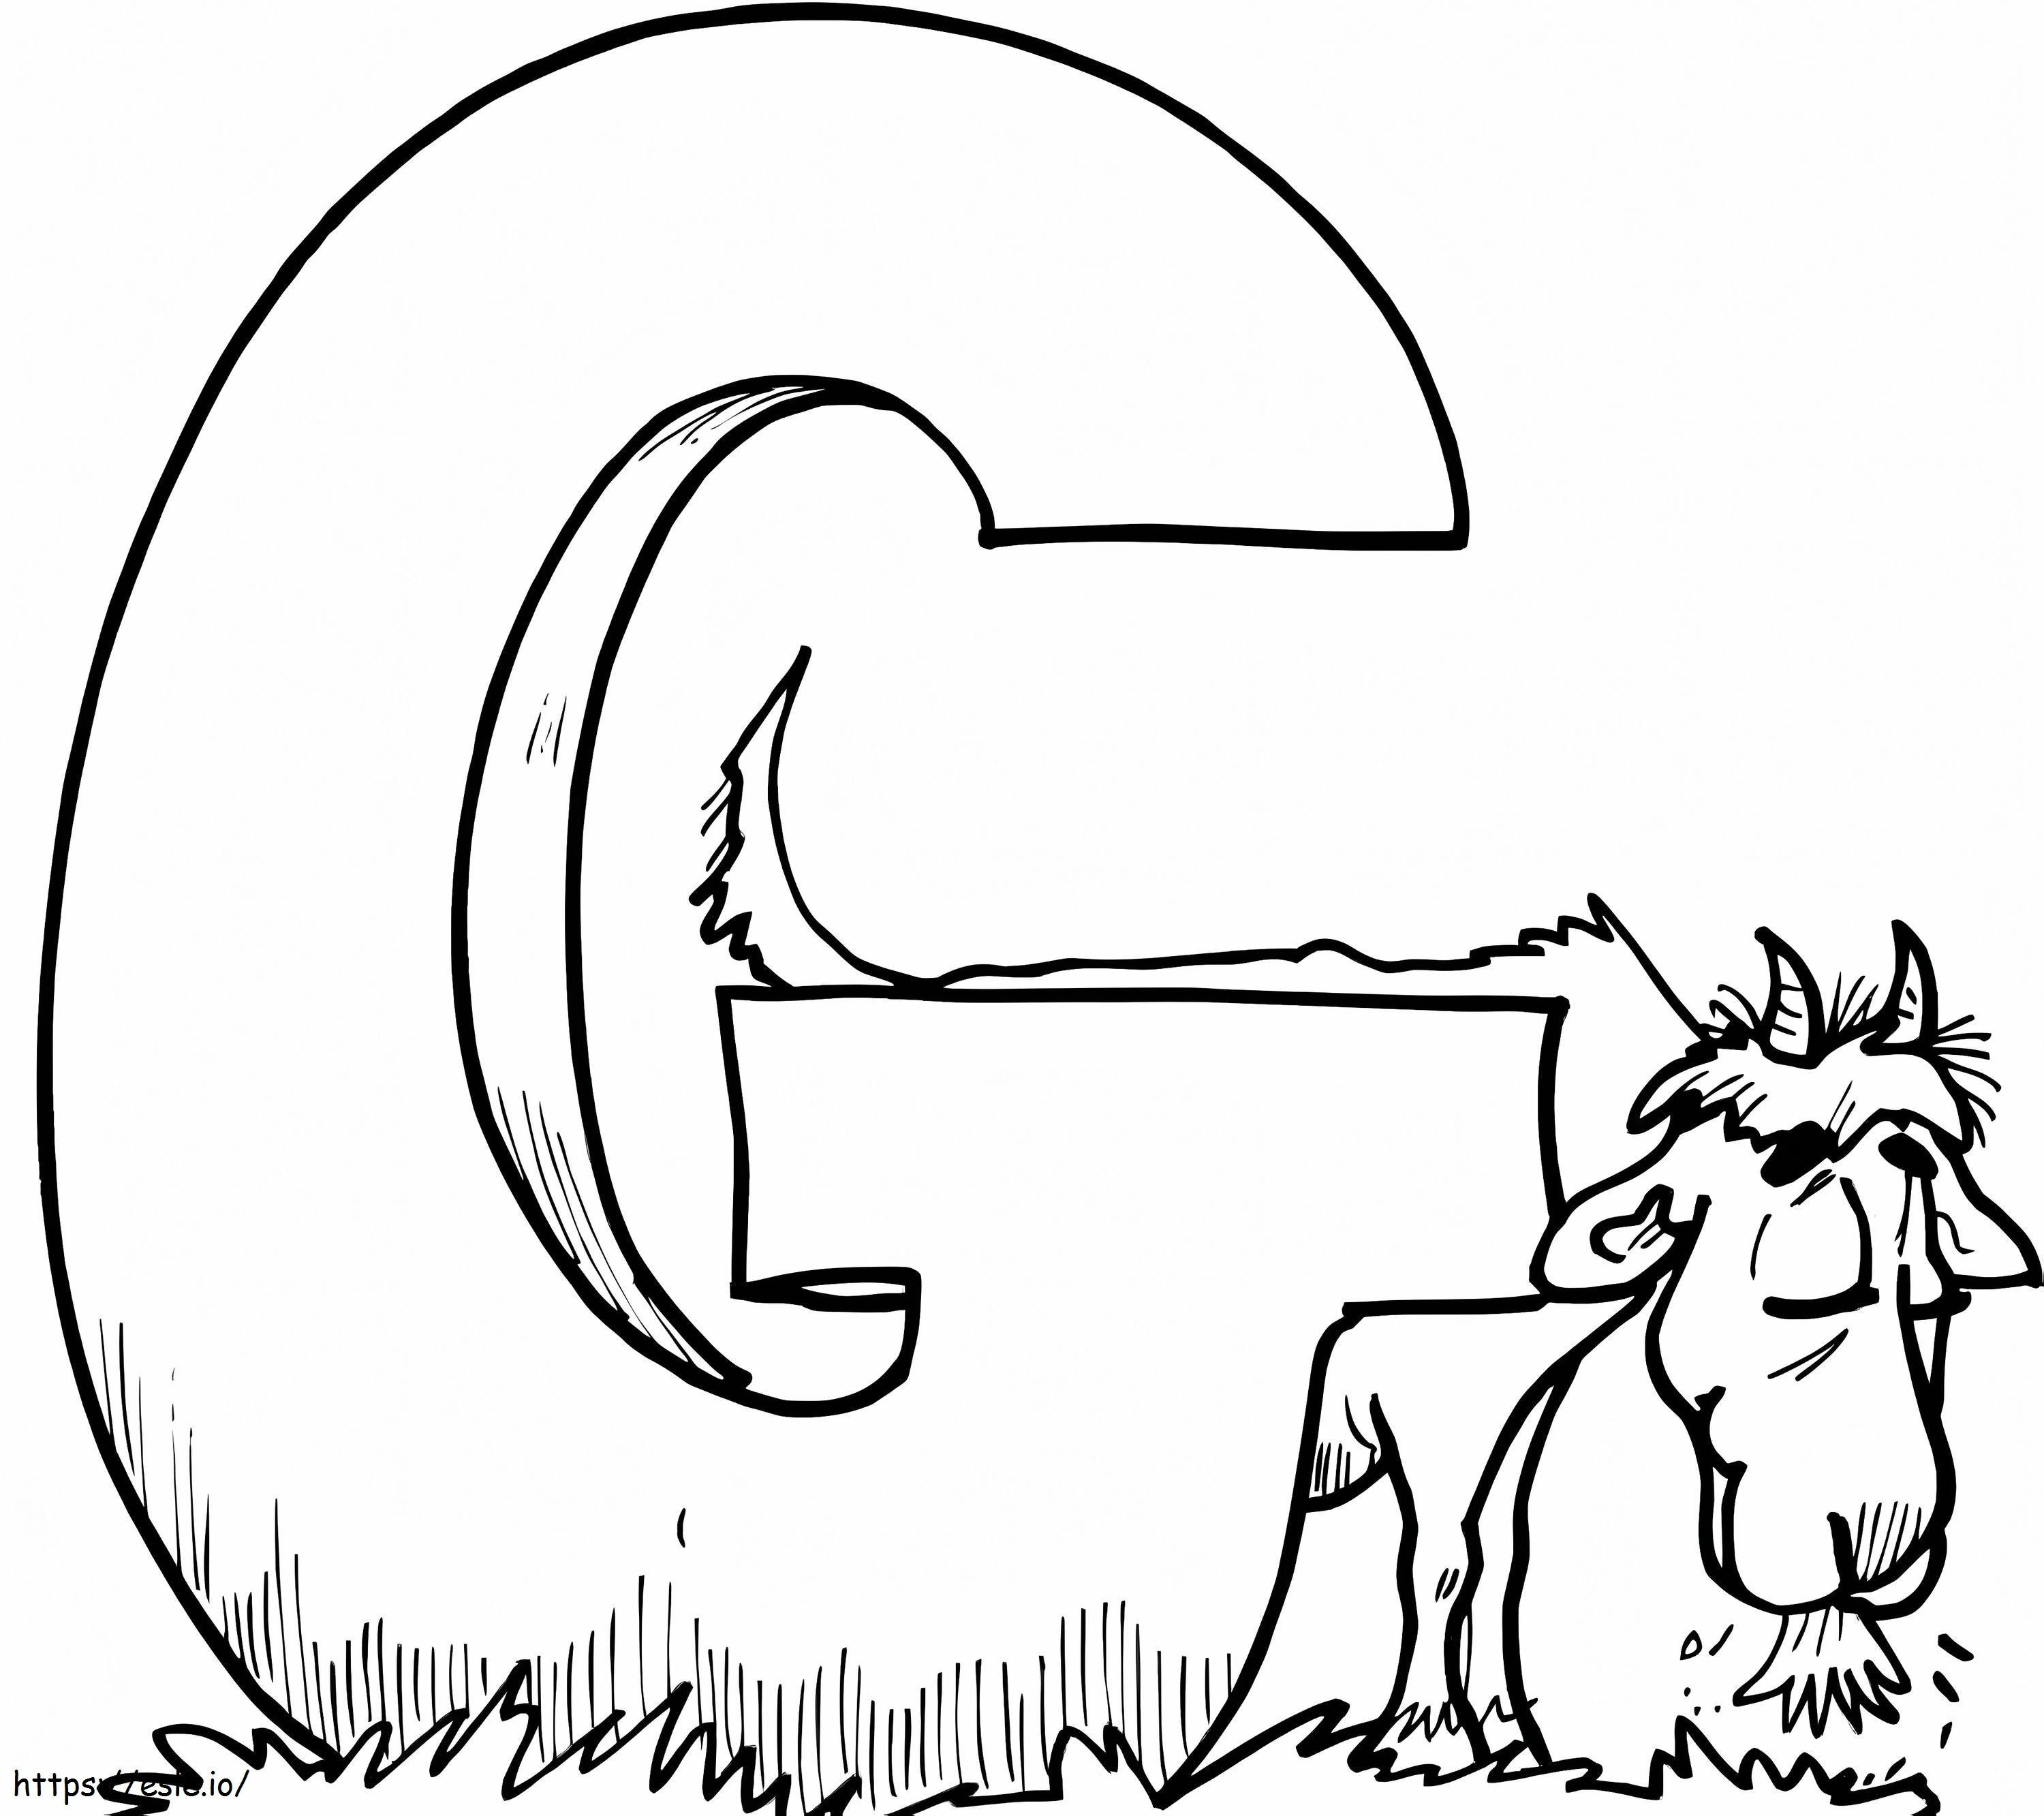 Litera G care mănâncă capra de colorat